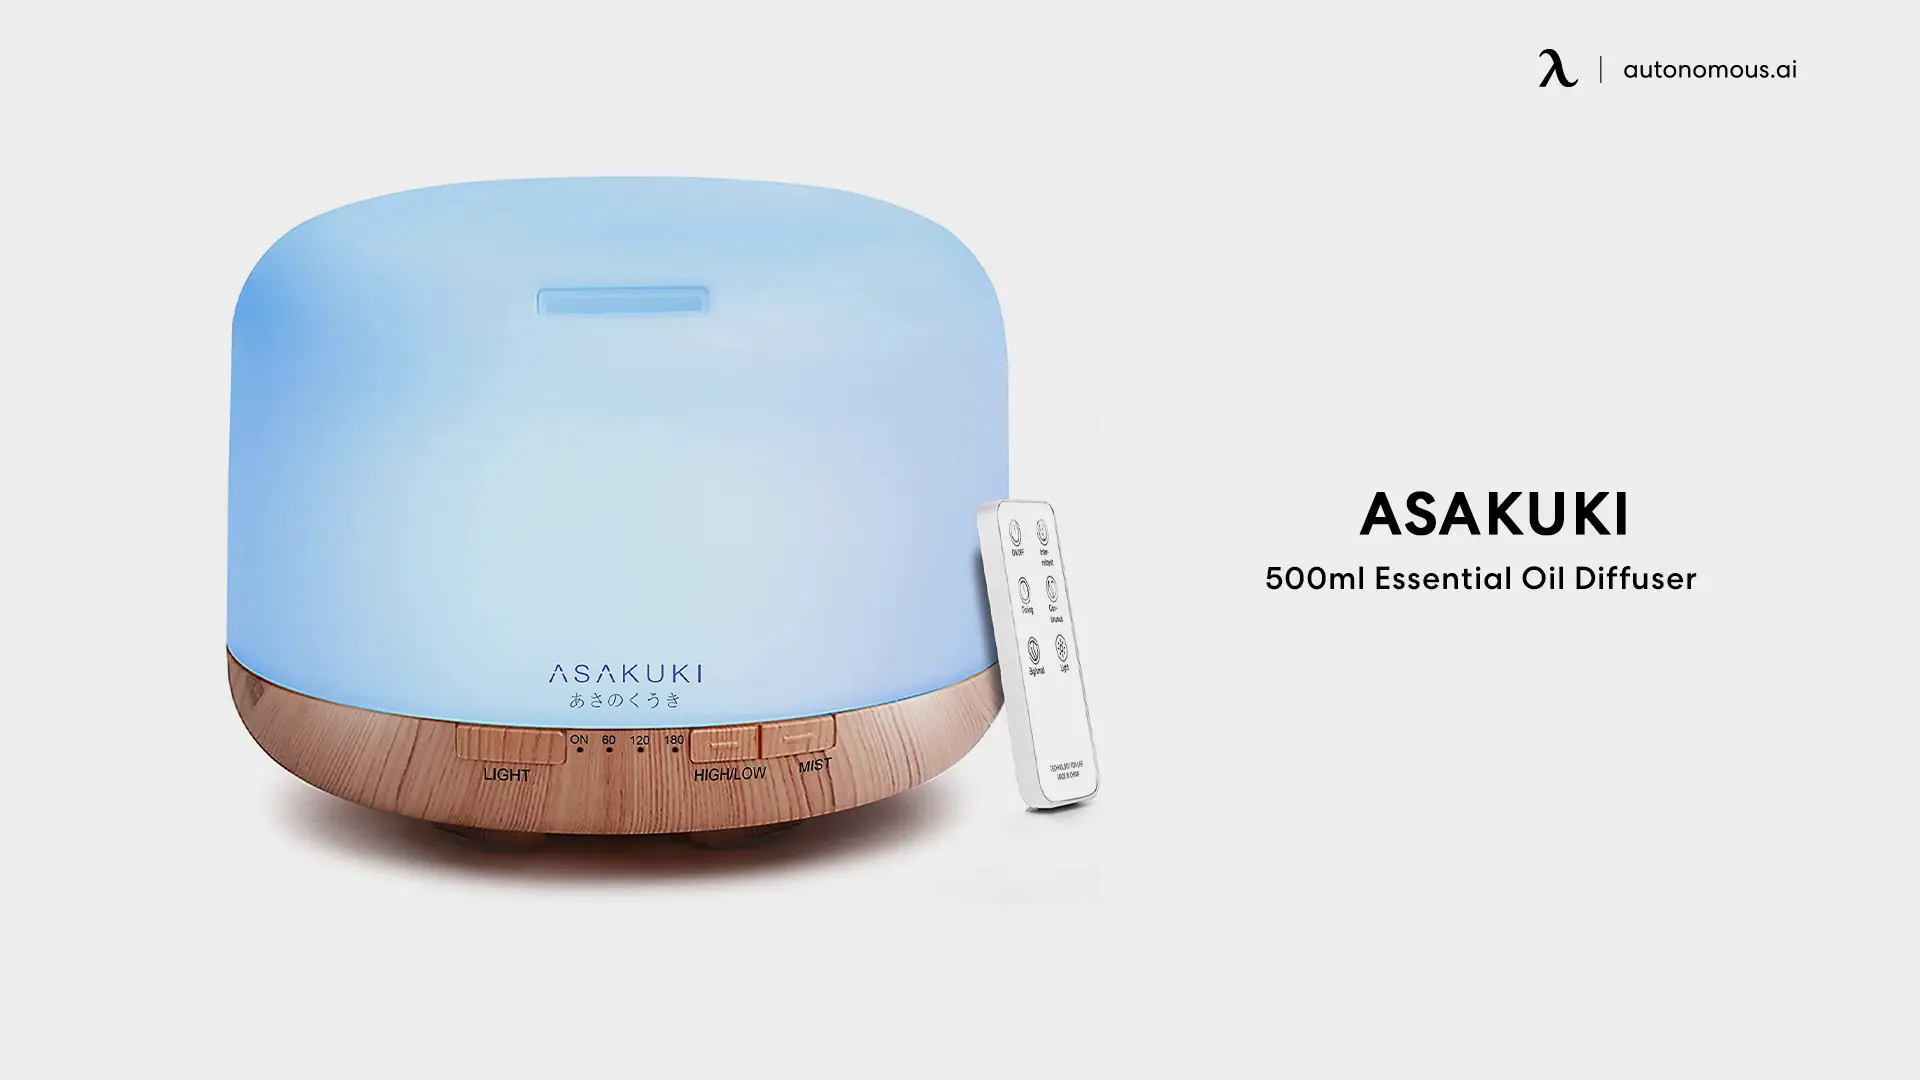 ASAKUKI 500ml Essential Oil Diffuser - best humidifiers